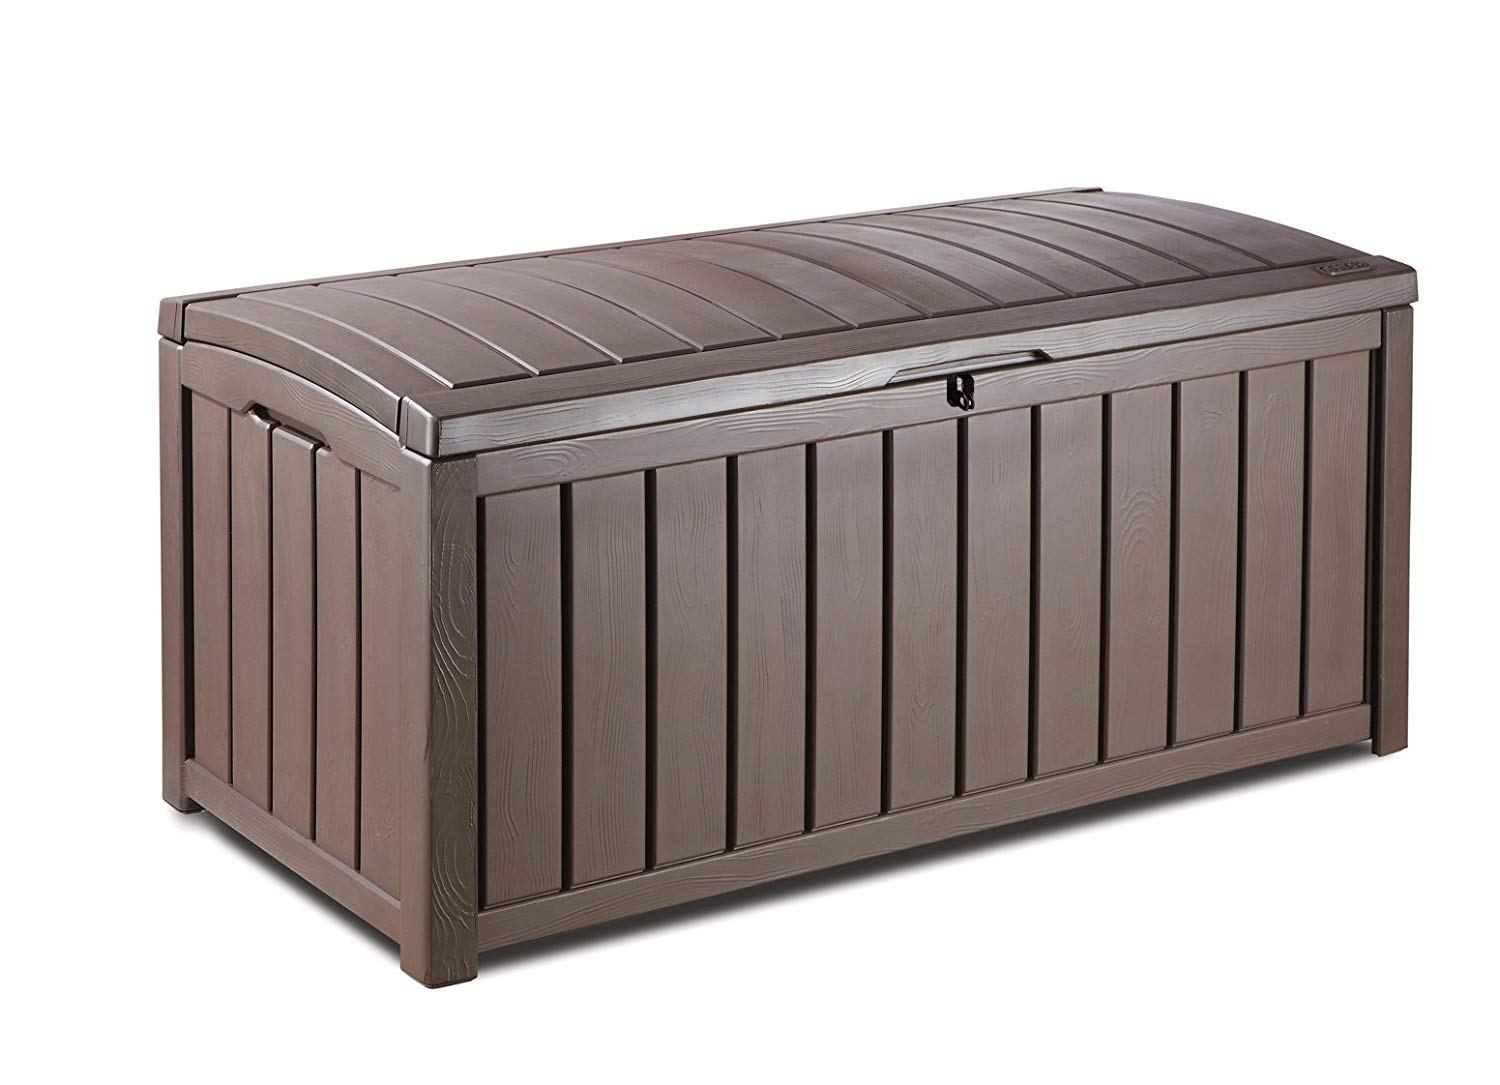 garden storage boxes amazon.com: keter glenwood plastic deck storage container box 101 gal: home HPUTYMM